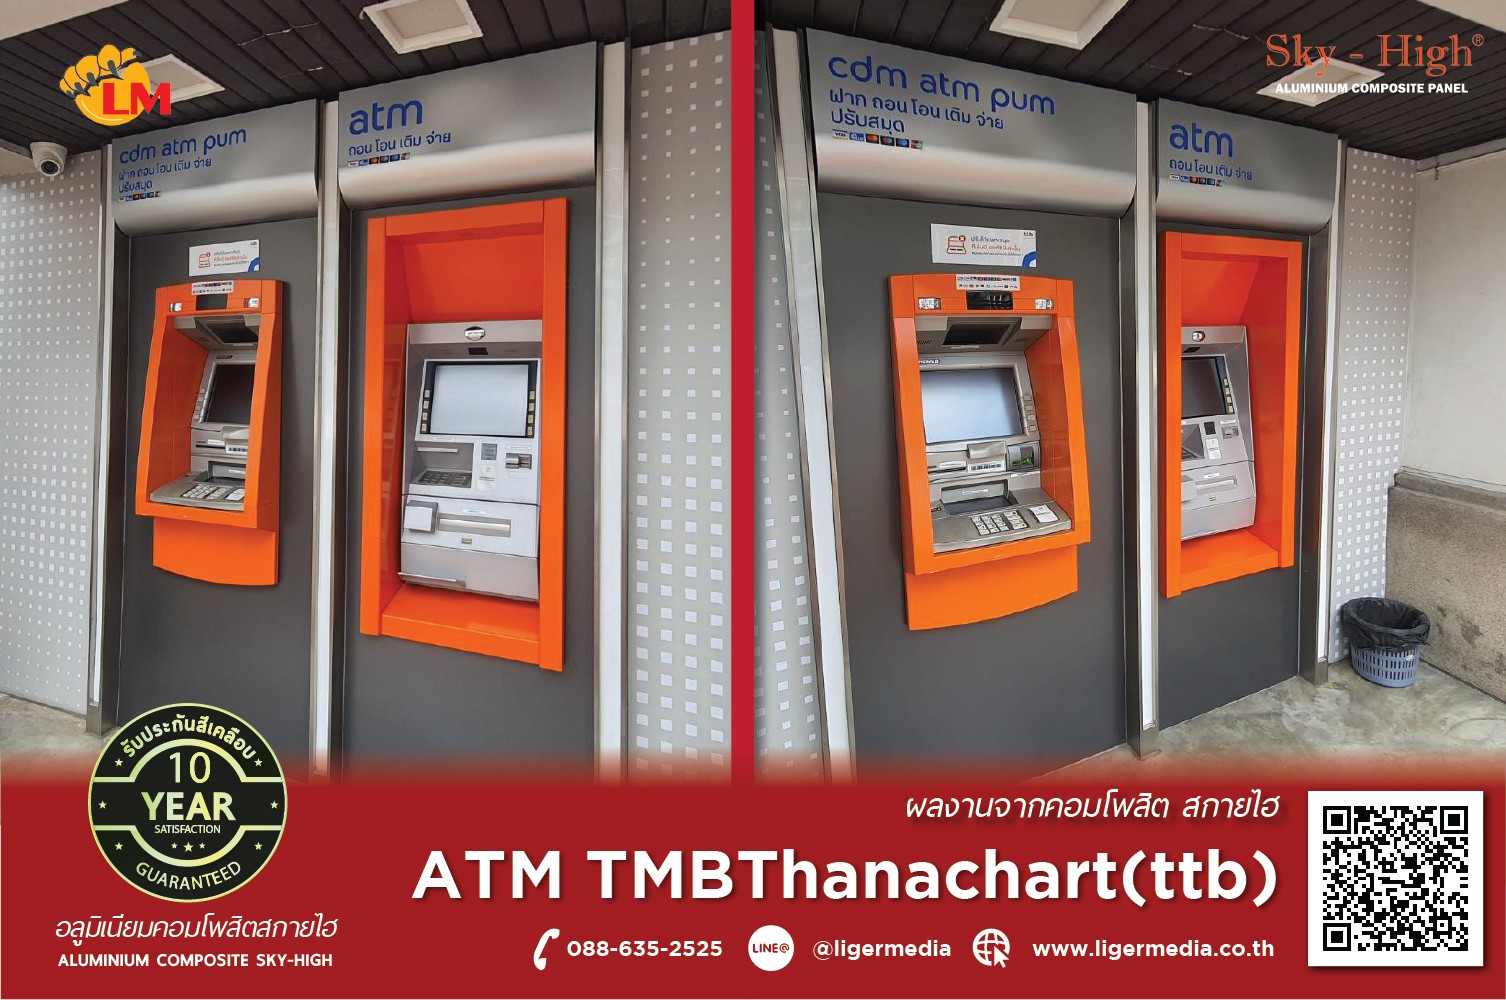 ตู้ ATM ทีเอ็มบีธนชาต